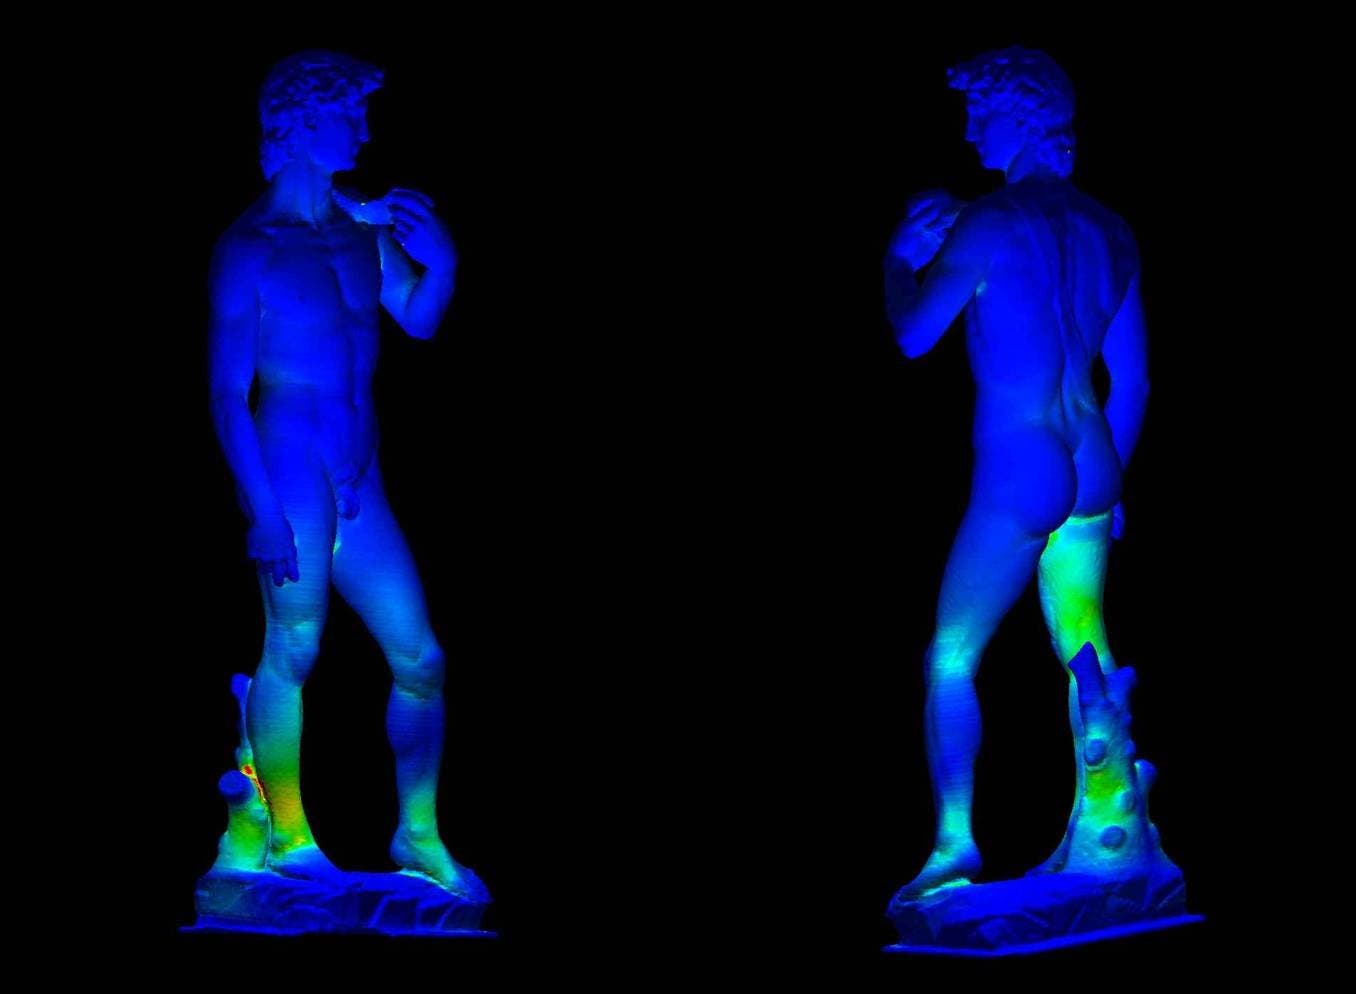 Michelangelos Davidstatue im Statik-Scan